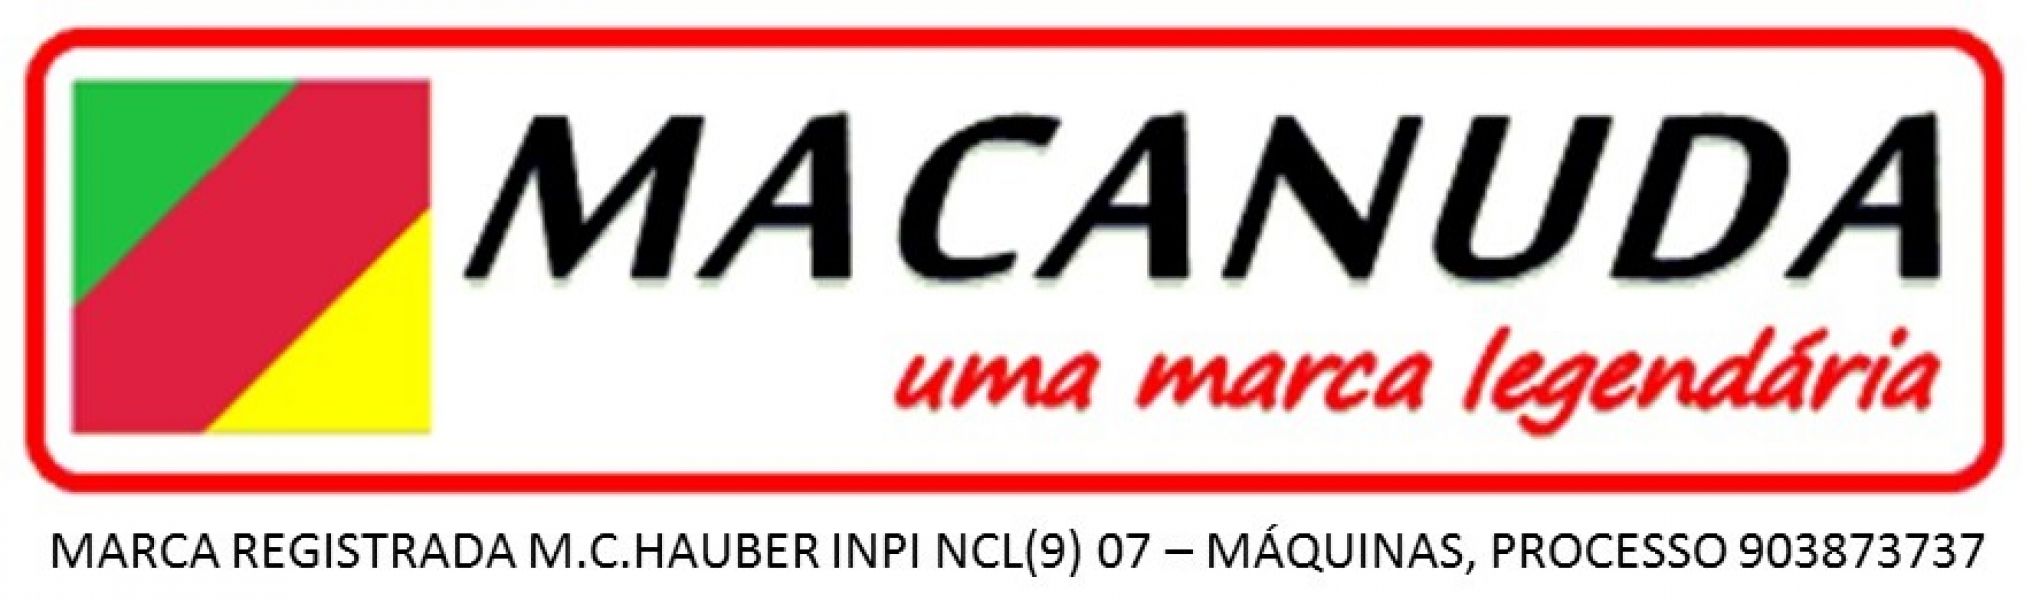 Fábrica de panela suqueira marca Macanuda